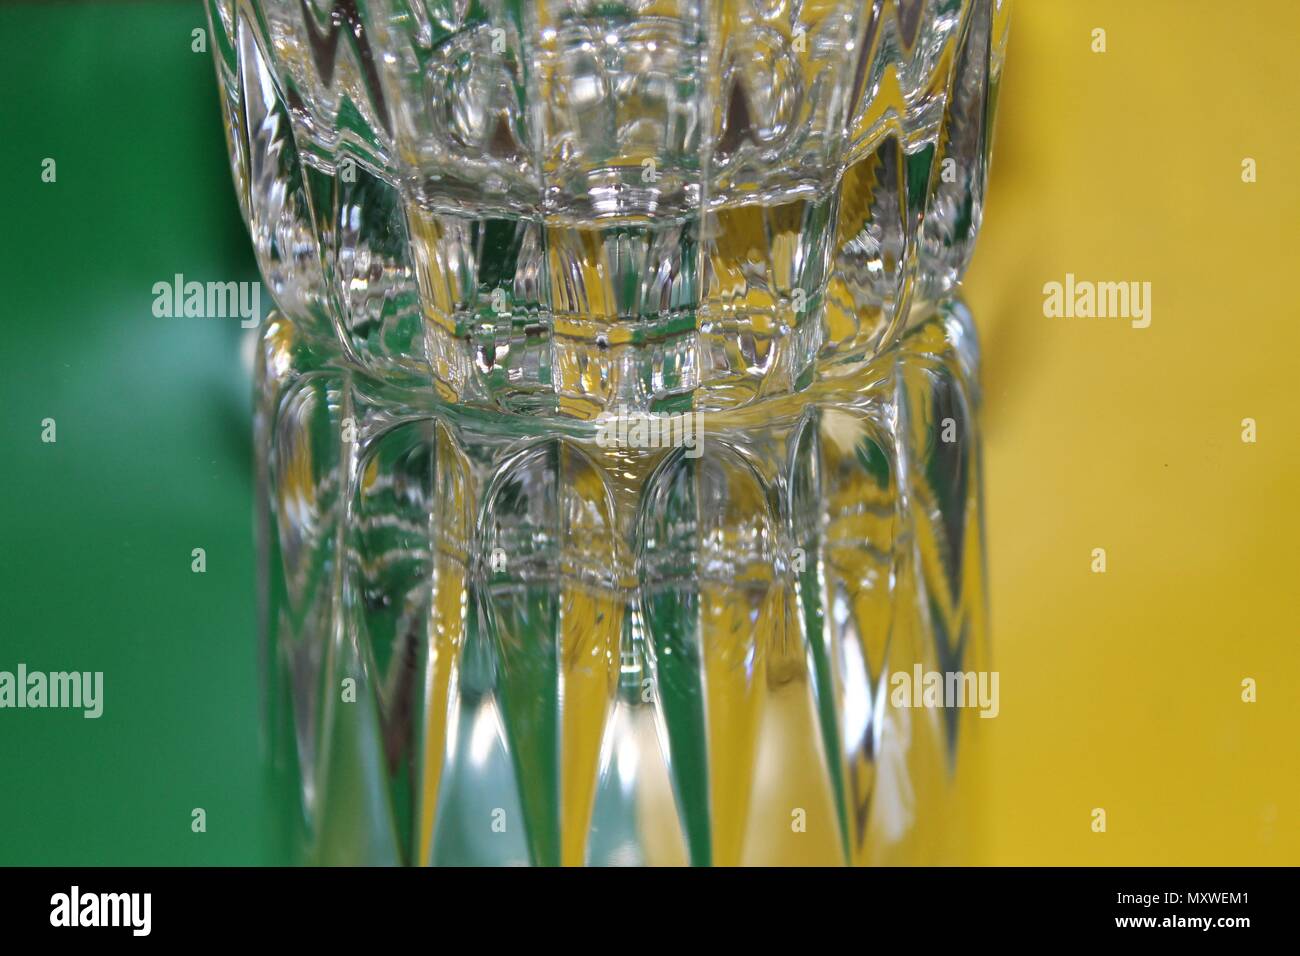 Une réflexion du verre avec fond vert et jaune. Banque D'Images